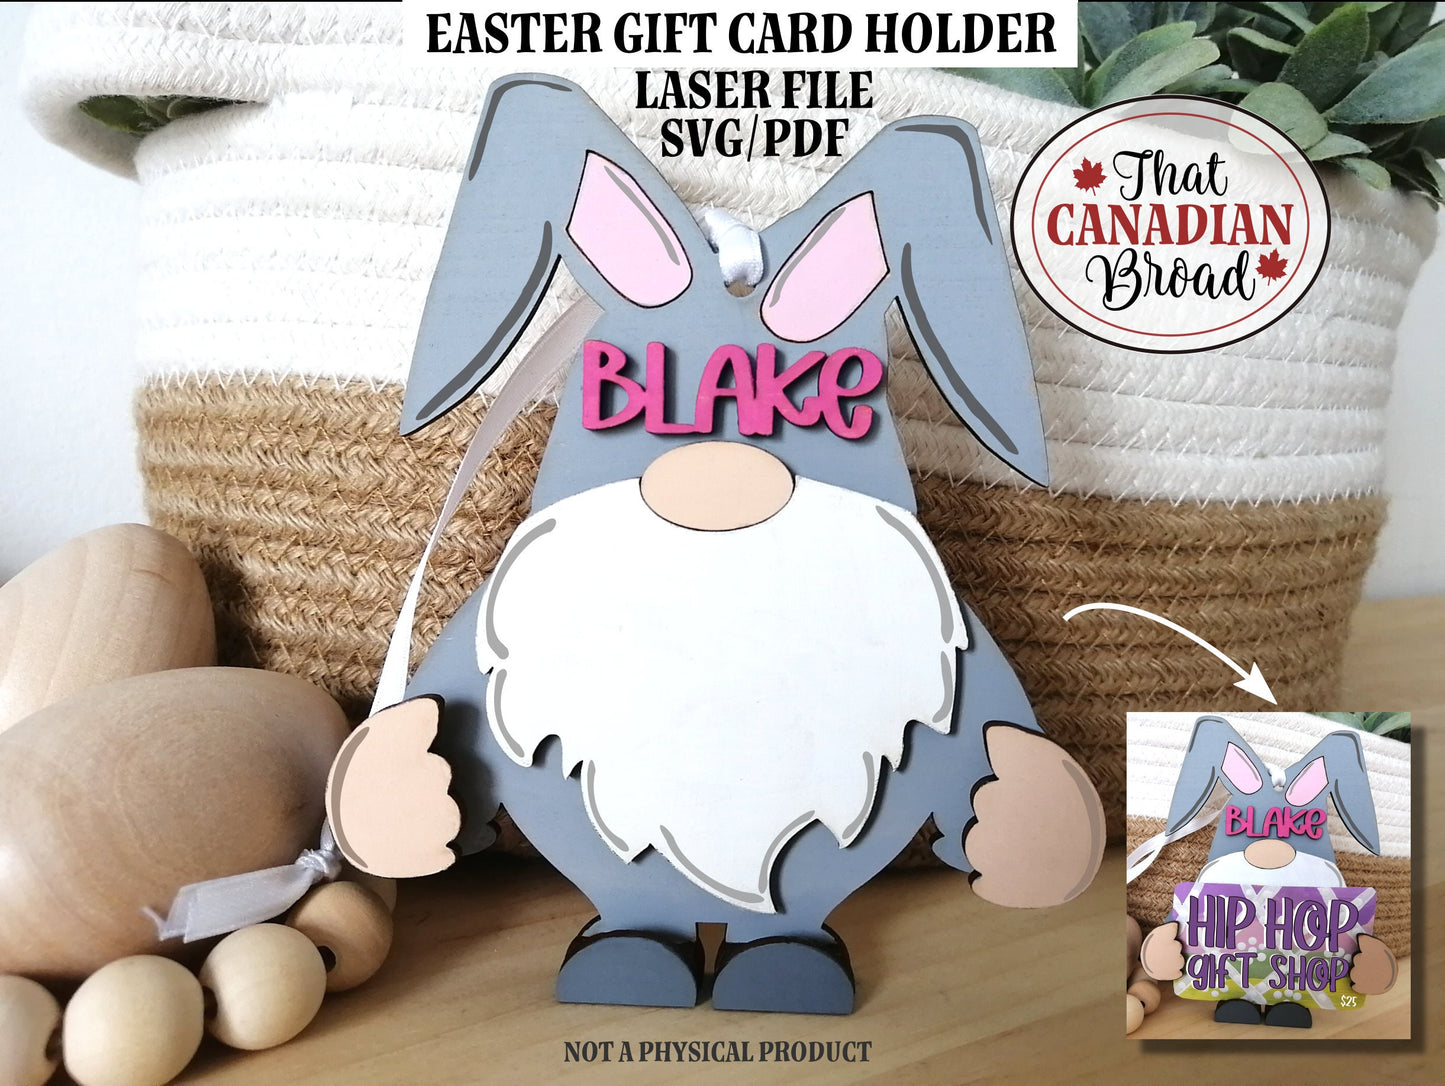 Easter Gift Card Holder Gnome, Standing or Hanging, gift card holder, laser file, svg, pdf, digital file only